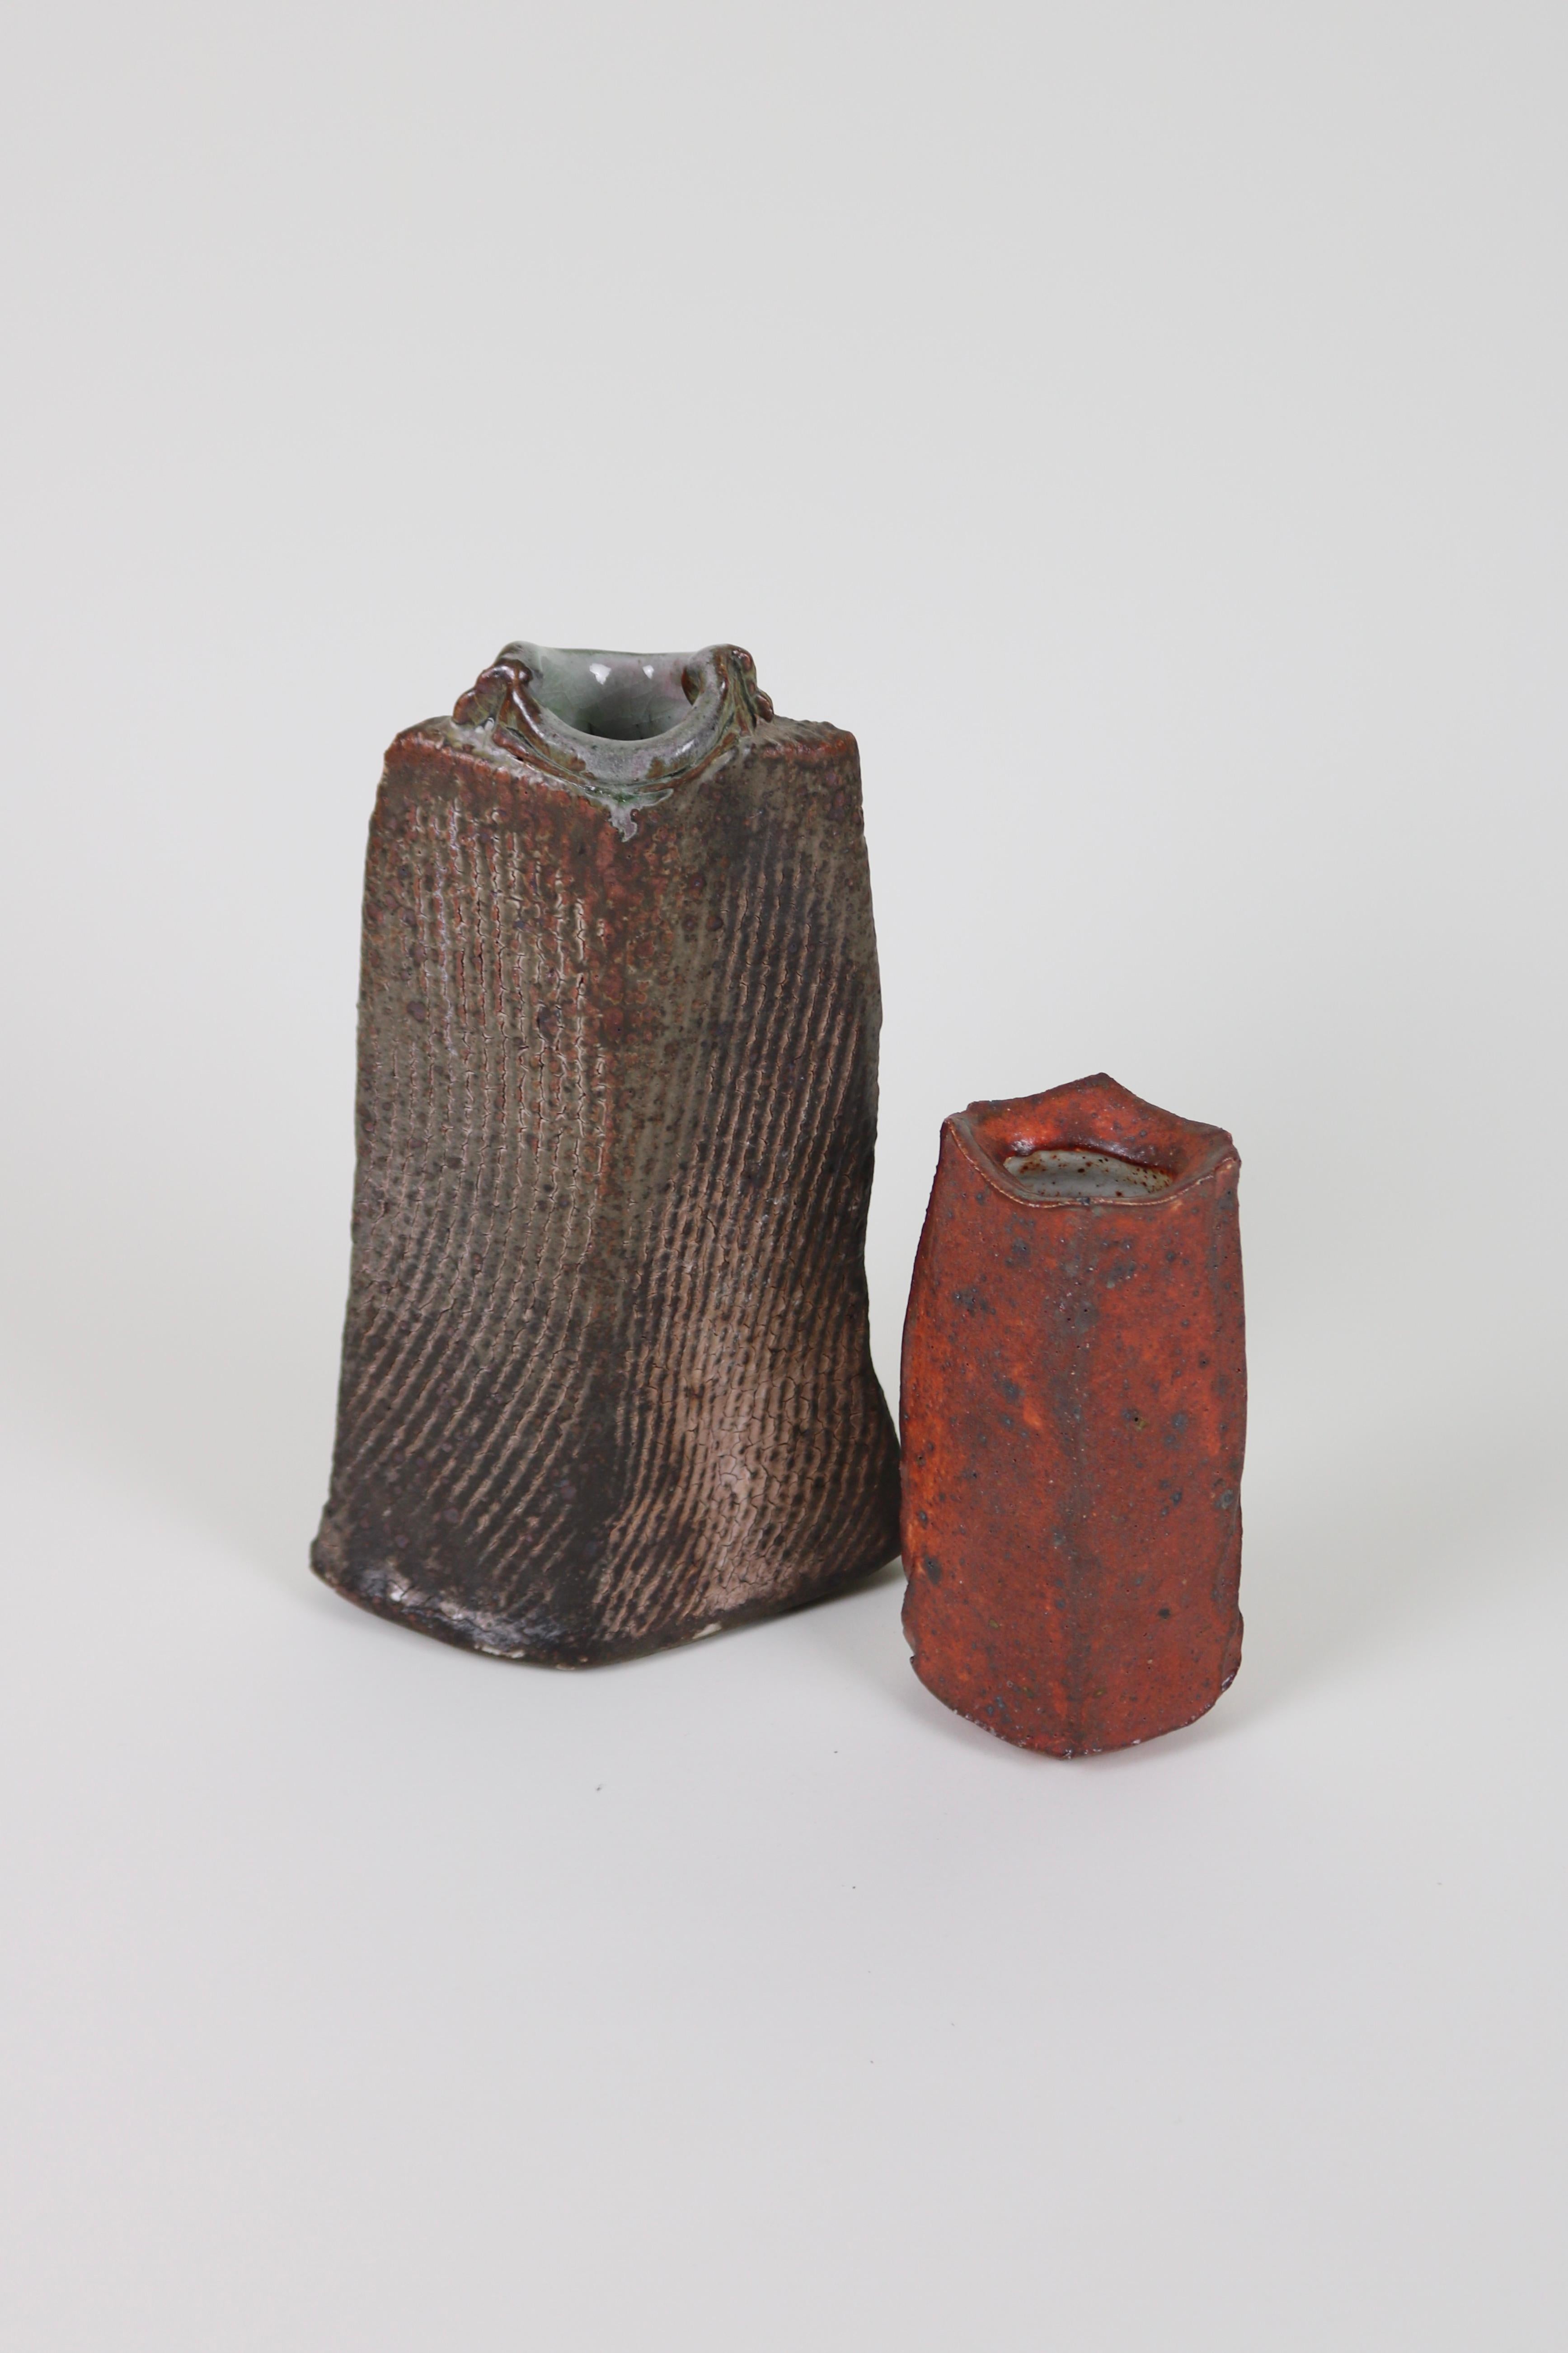 Eine Vase der in Griechenland geborenen Künstlerin Katerina Evangelidou. Eine Flaschenform aus holzgebranntem Steinzeug mit strukturierter Oberfläche und Ascheglasur.

Evangelidou schafft wunderschöne organische Formen. Ihr Prozess beginnt immer auf